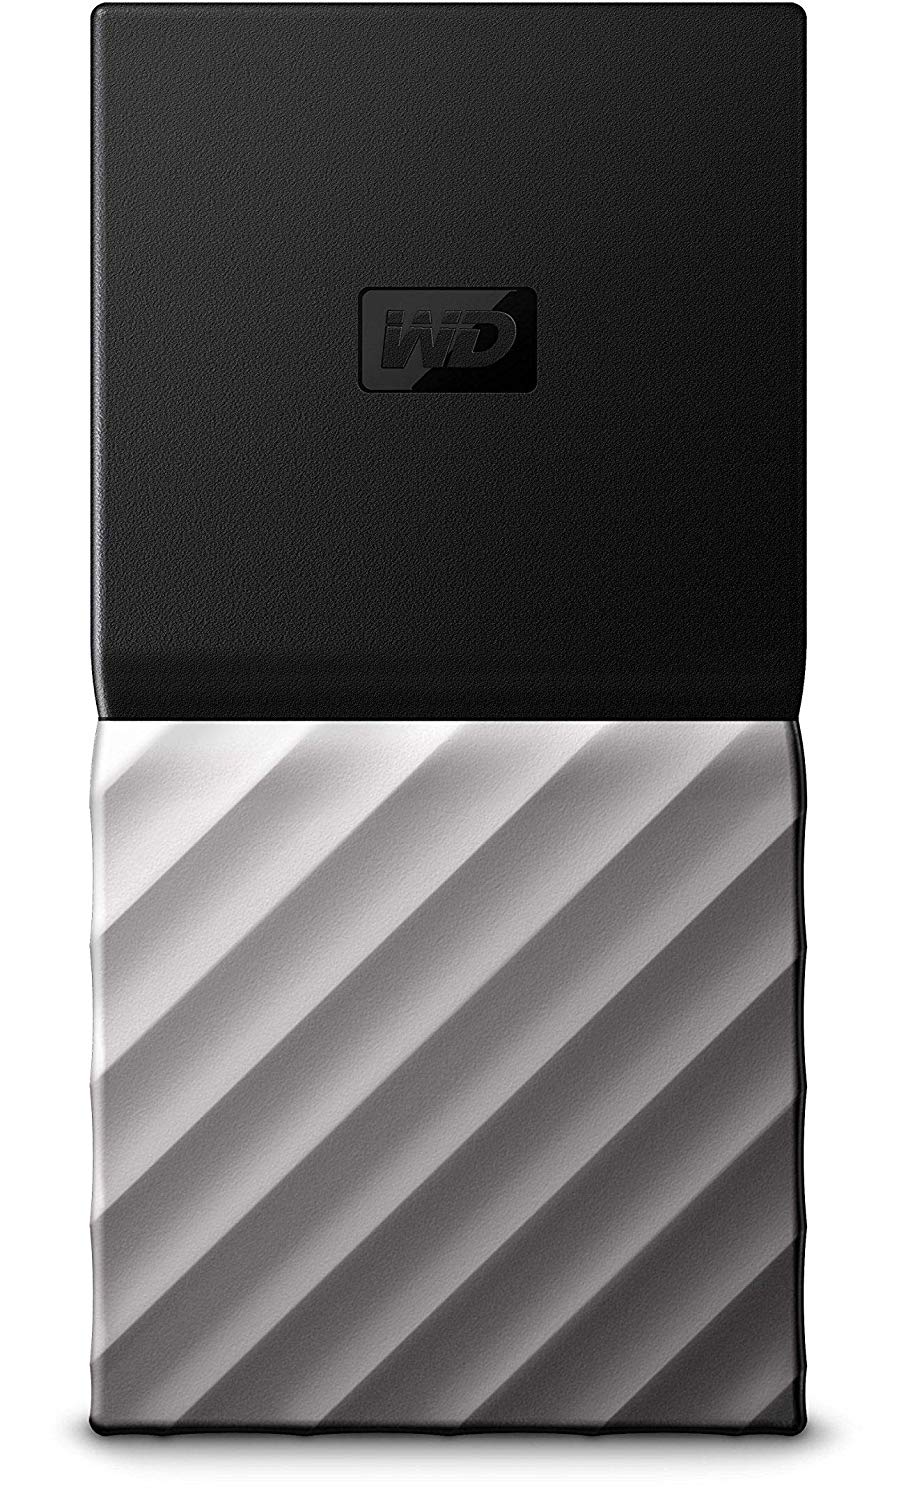 Western Digital WD 256 GB Tragbarer SSD-Speicher für meine Passport-SSD - USB 3.1 - Schwarz-Grau - WDBK3E2560PSL-WESN